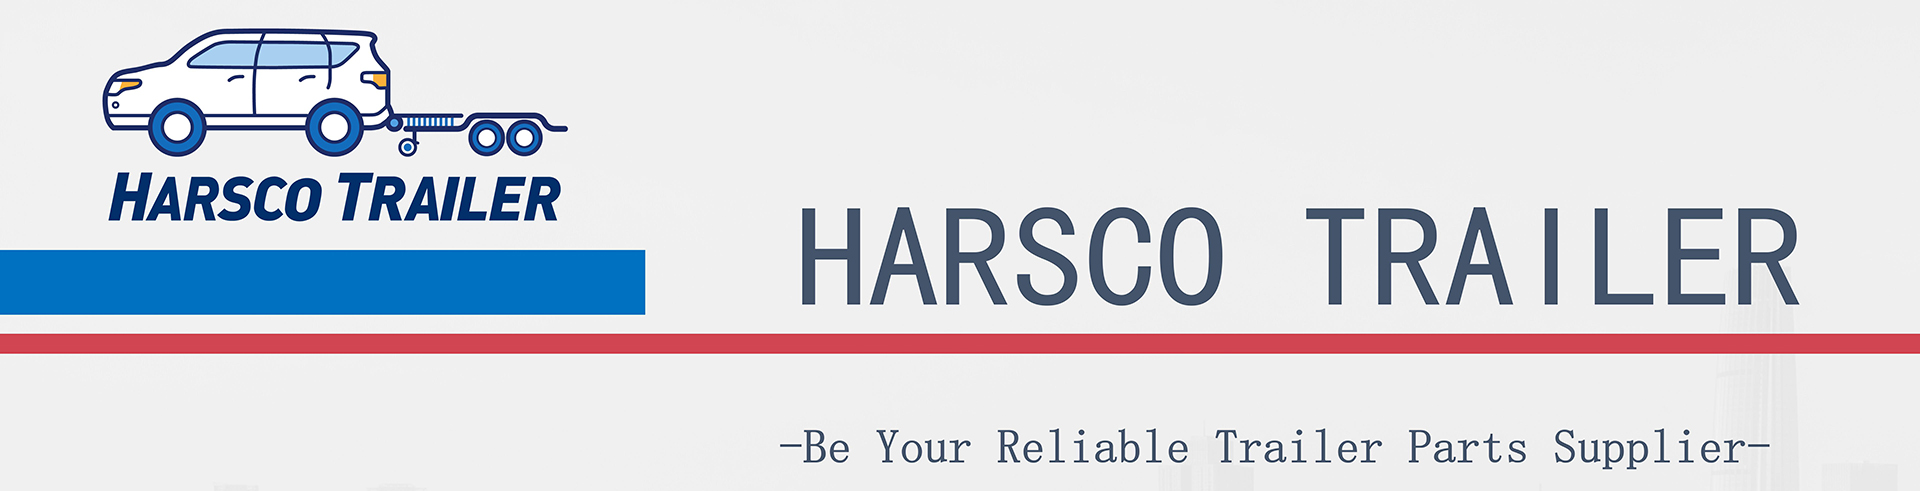 Harsco Trailer Banner001